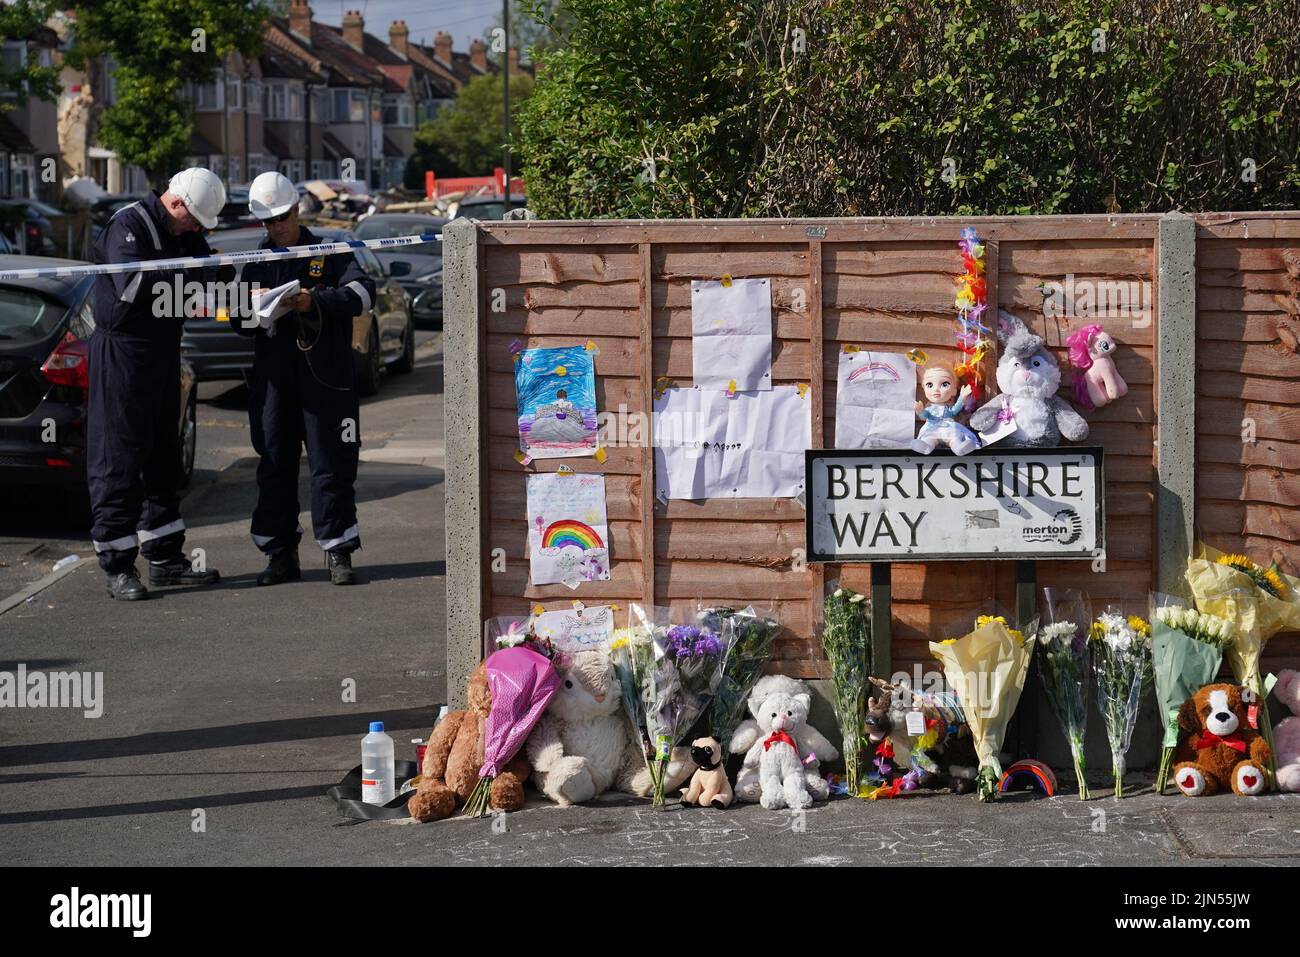 Blumen werden in der Nähe der Szene in Galpin's Road in Thornton Heath, Süd-London, gelegt. Der Londoner Krankenwagen hat bestätigt, dass ein Kind gestorben ist und drei Personen im Krankenhaus sind, nachdem das Reihenhaus am Montag nach einer Explosion und einem Brand zusammengebrochen war. Bilddatum: Dienstag, 9. August 2022. Stockfoto